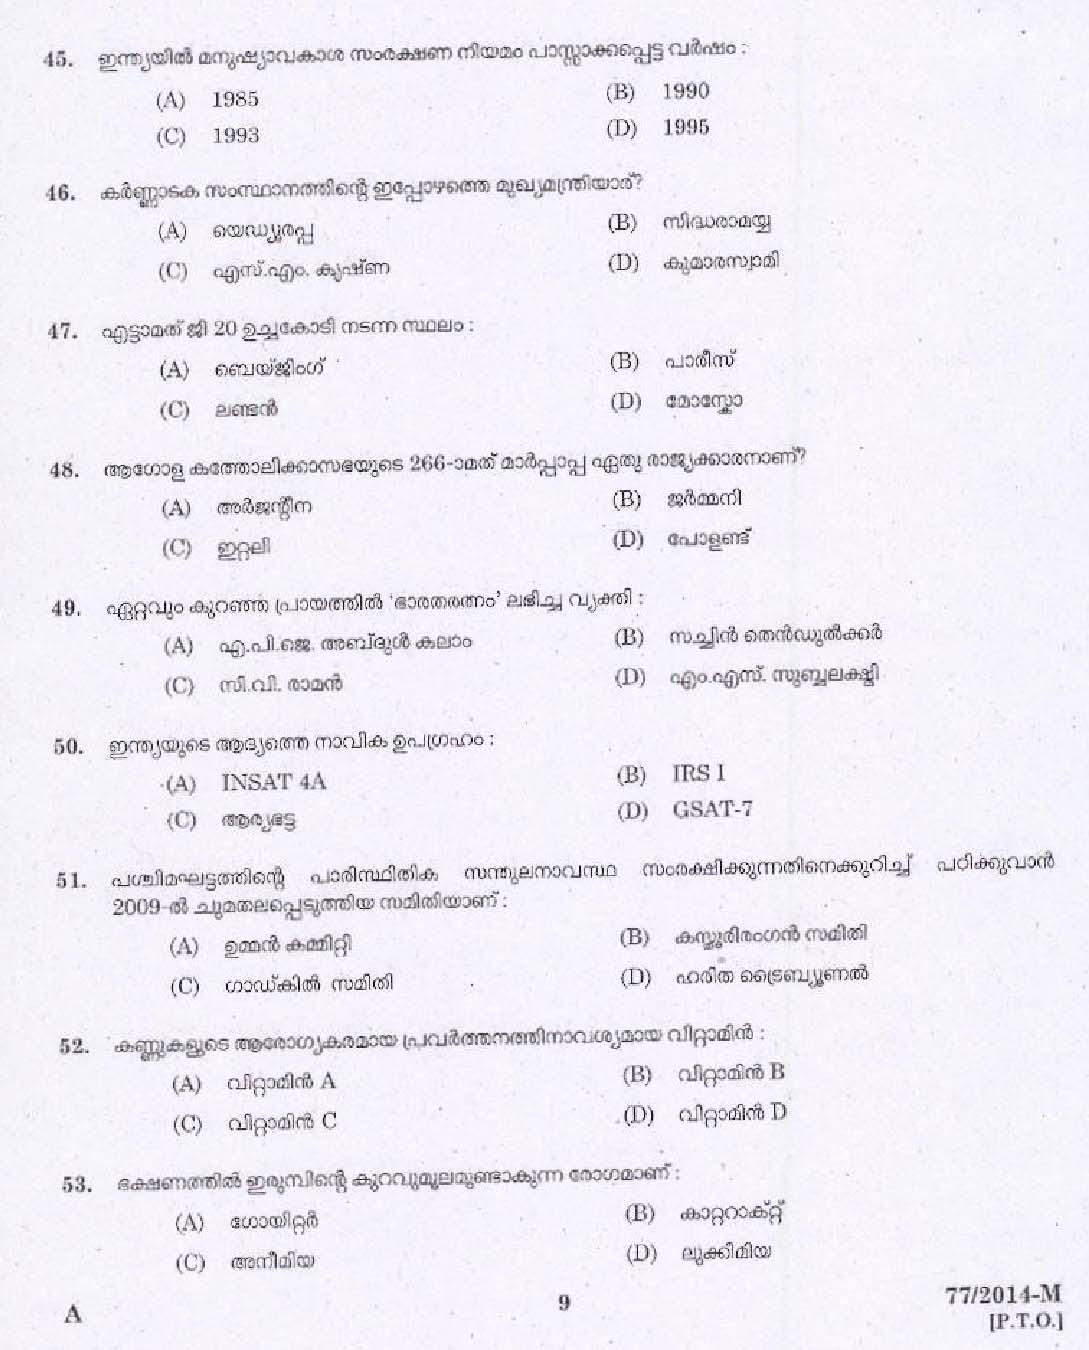 KPSC Village Extension Officer Grade II Exam 2014 Code 772014 M 7